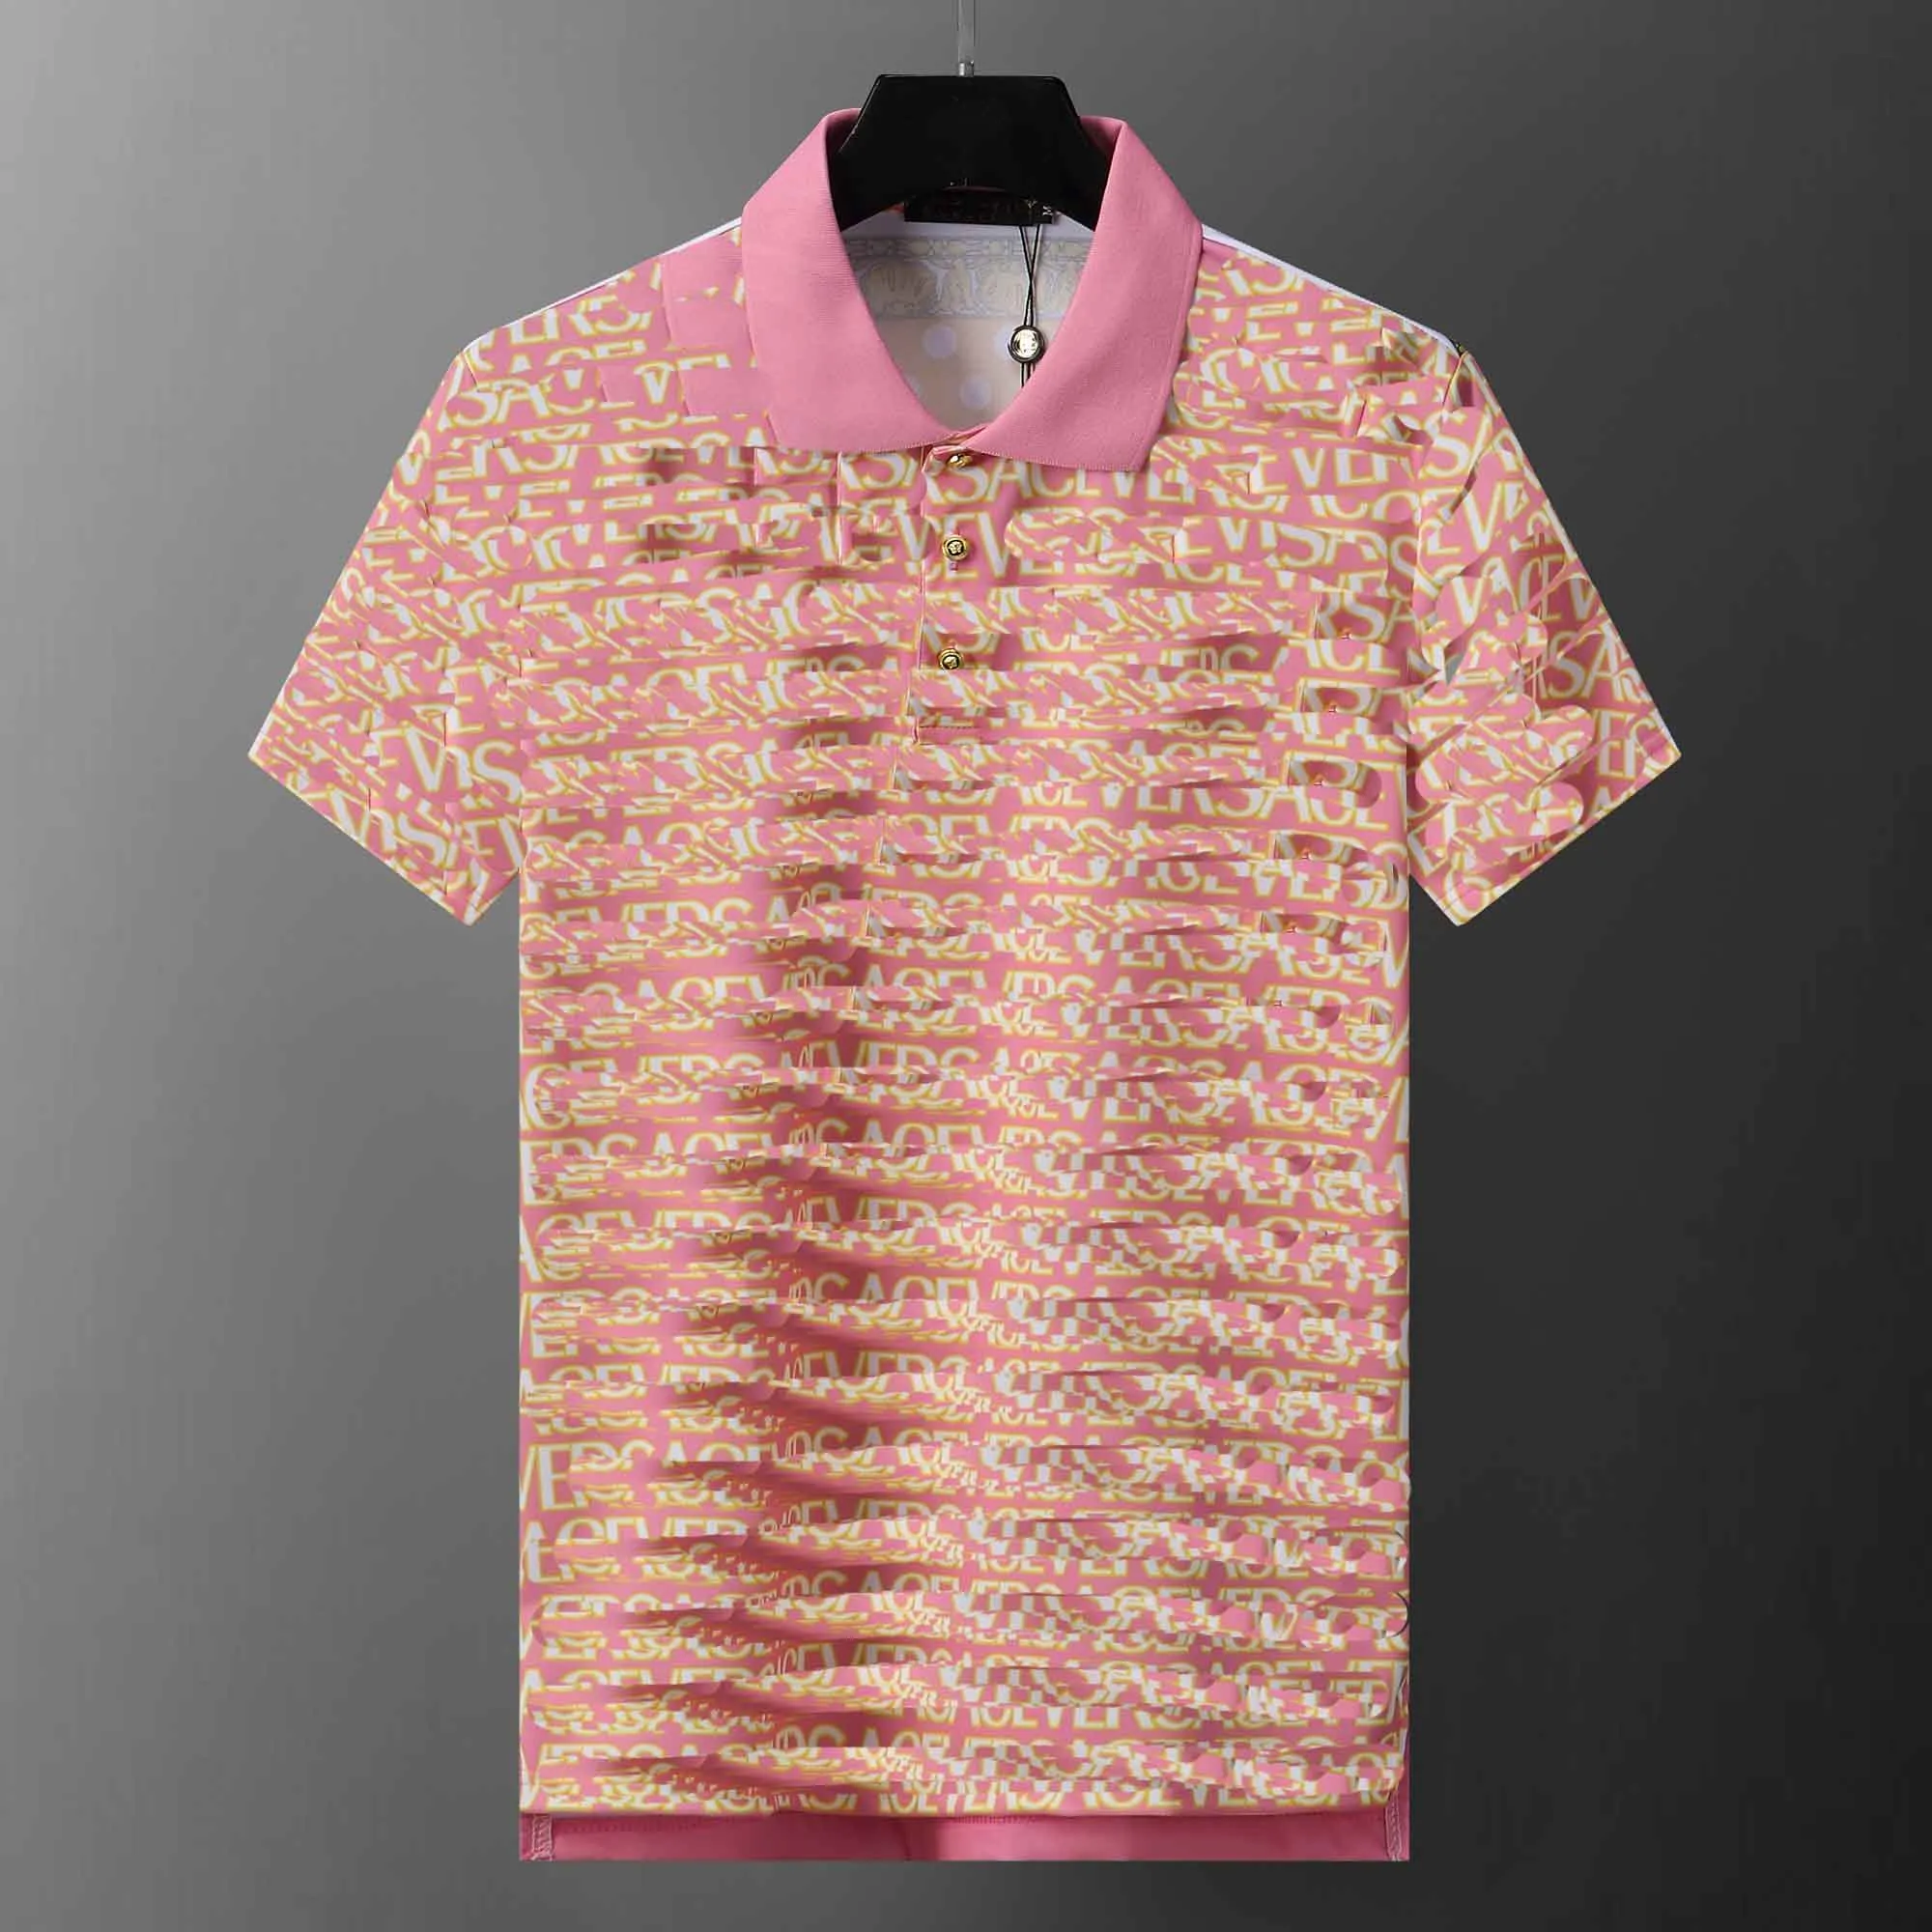 Mulher masculina polos designer camisa marca polo letras coloridas moda camisetas respirável manga curta lapela casual pano de algodão puro listras xadrez camisa polo cáqui